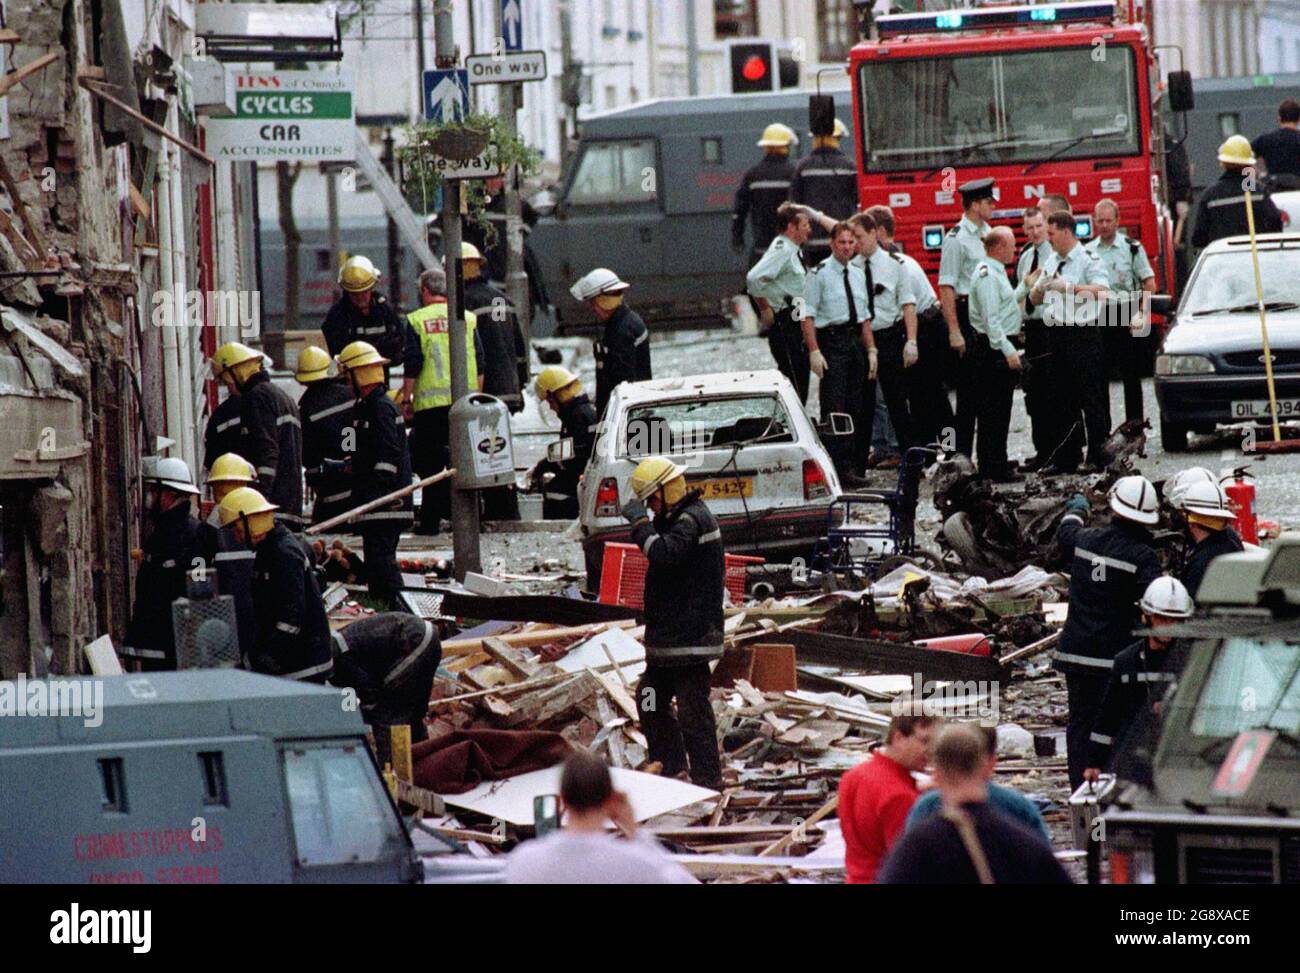 UK USE ONLY file photo datato 15/08/98 del Royal Ulster Constabulary funzionari di polizia e vigili del fuoco che ispezionano i danni causati da un'esplosione di bomba in Market Street, Omagh, Co Tyrone. Un giudice ha raccomandato al governo britannico di intraprendere un'indagine conforme ai diritti umani sul bombardamento dell'Omagh e ha esortato il governo irlandese a fare altrettanto, dopo aver scoperto che vi era una "prospettiva reale" che l'attacco dell'IRA reale nel 1998 avrebbe potuto essere impedito. Data di emissione: Venerdì 23 luglio 2021. Foto Stock